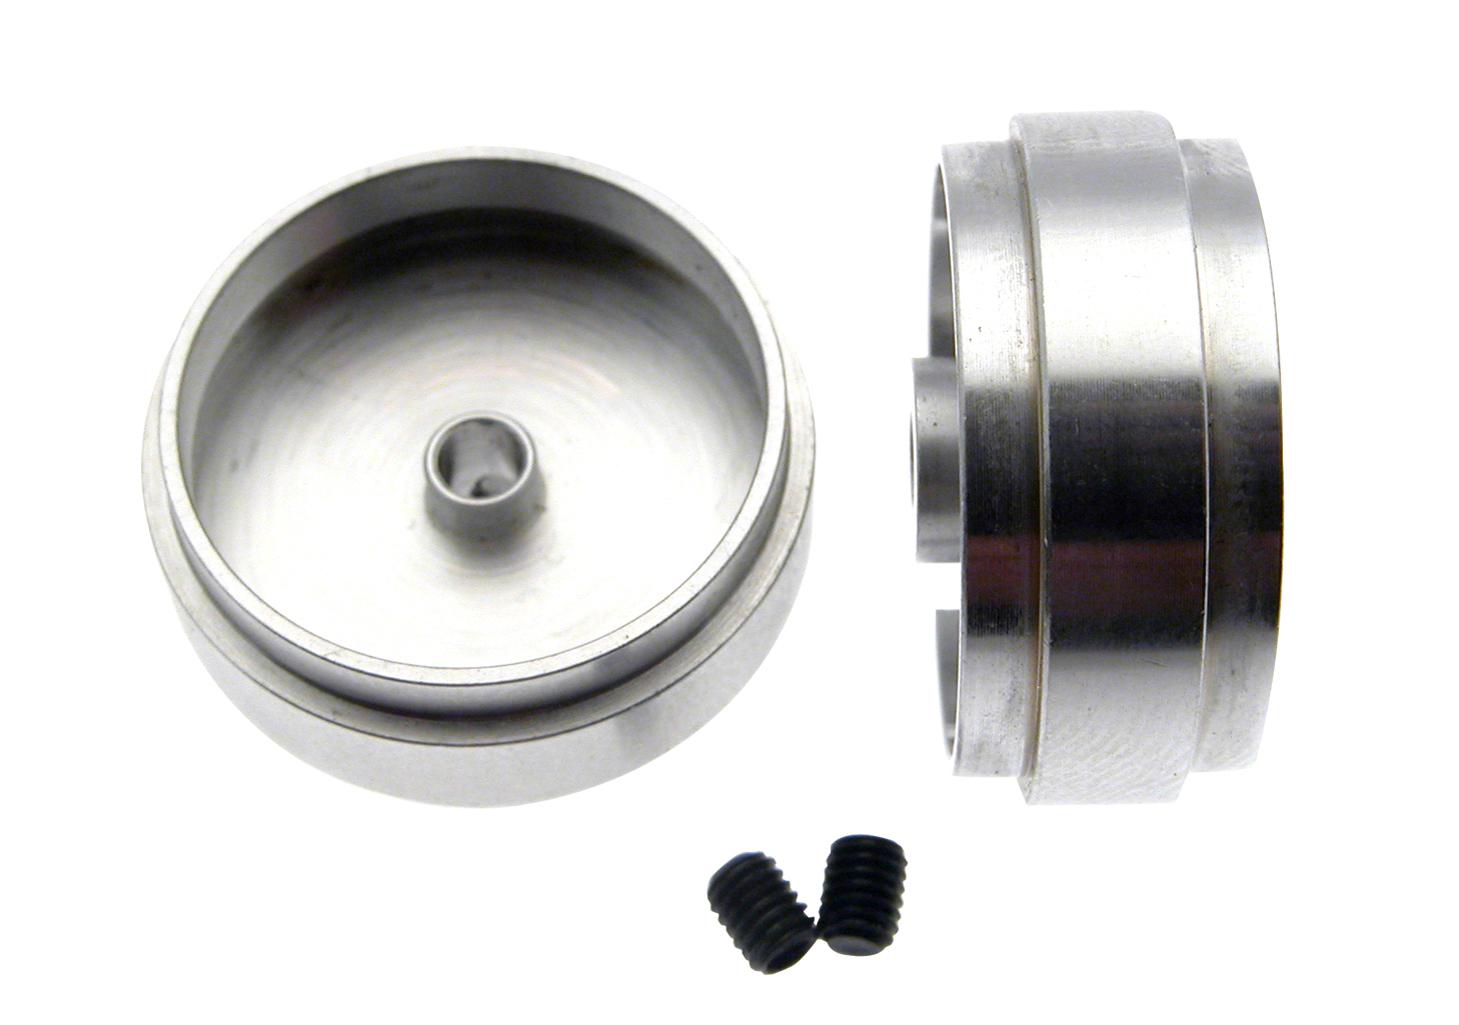 SC-4042 “Profile“ Design Wheel for 3mm Axle.